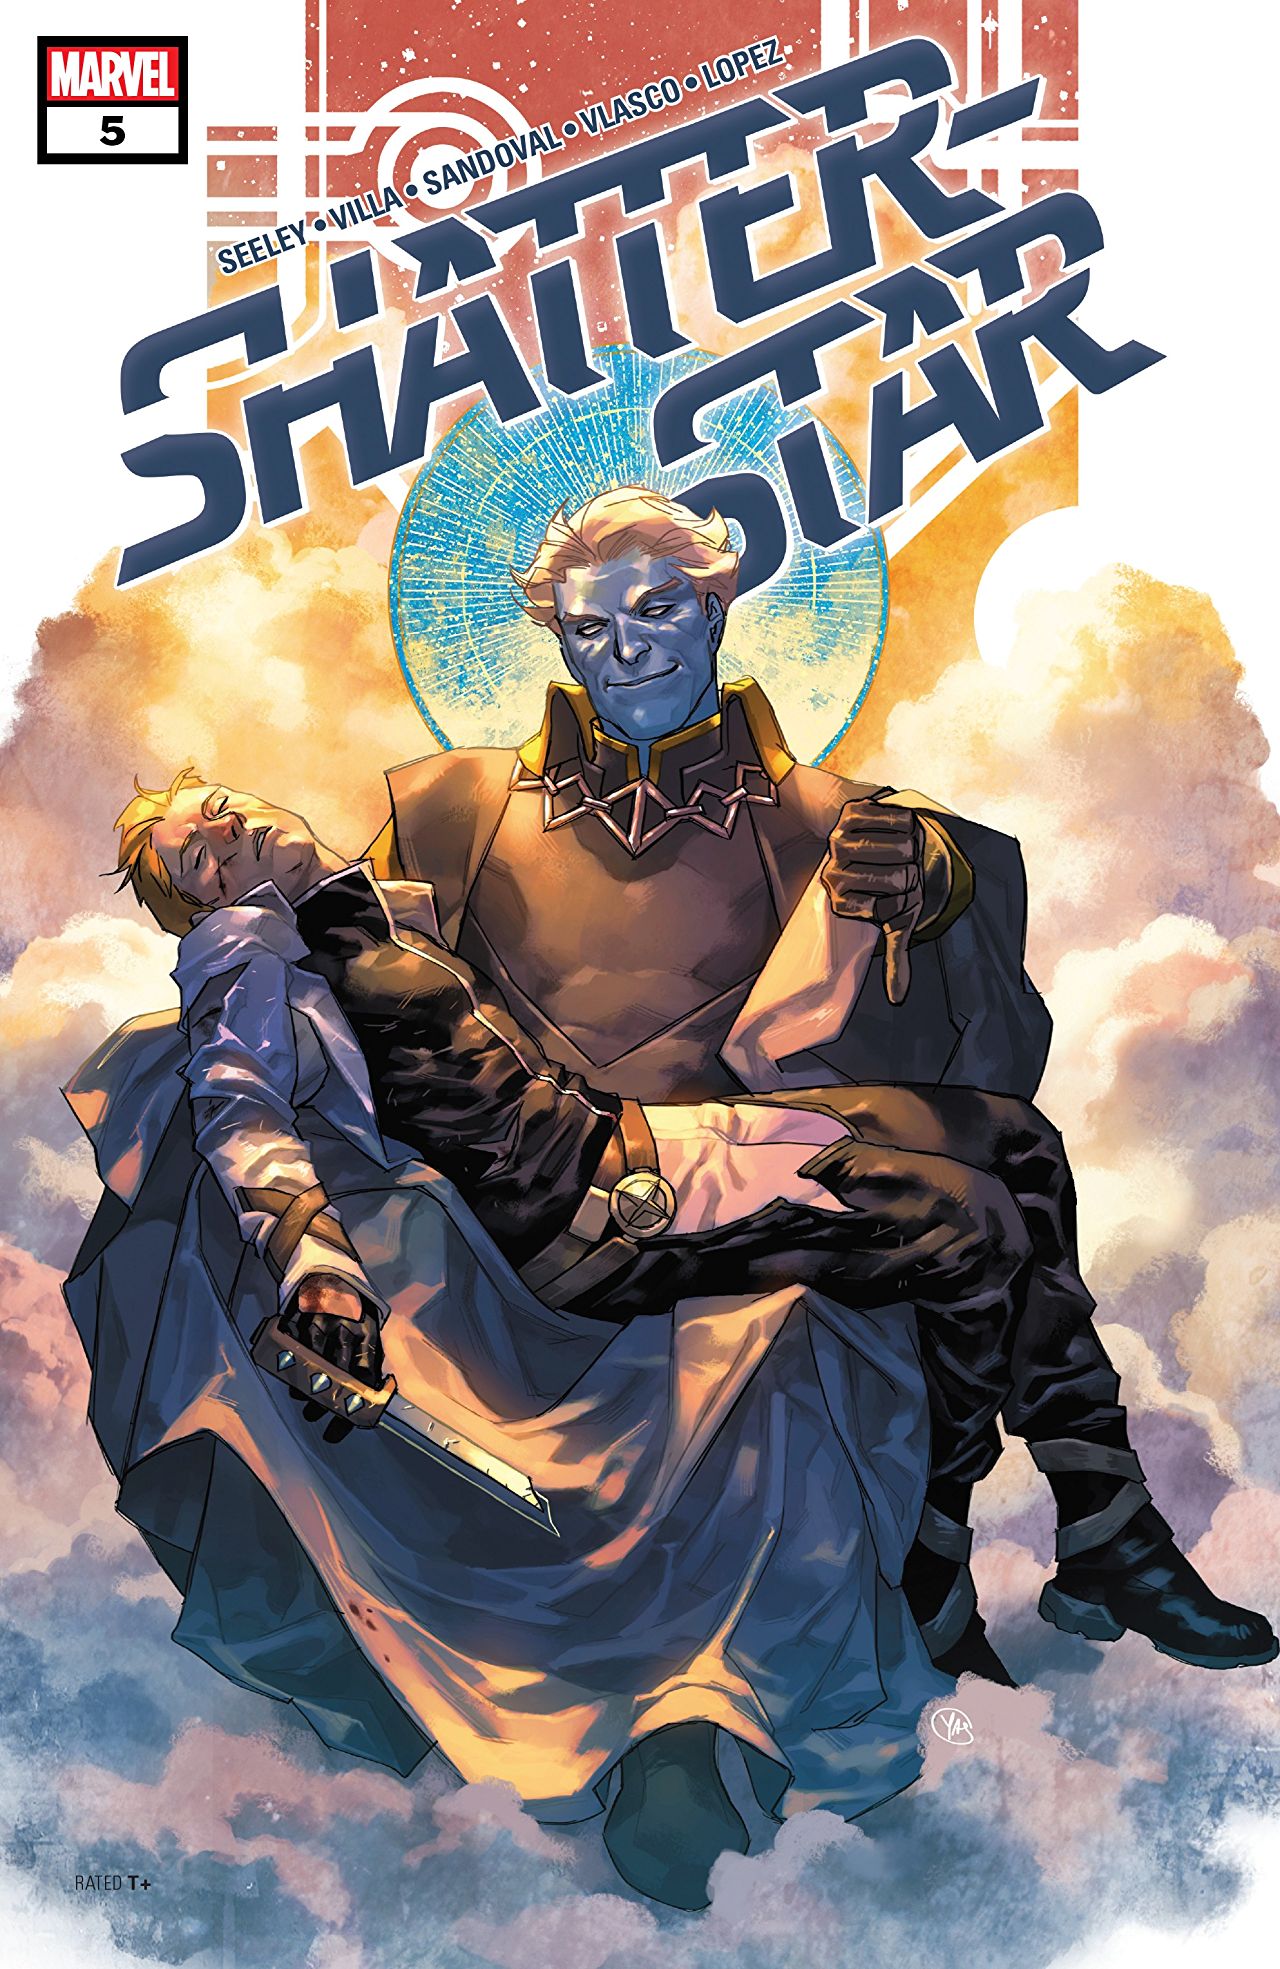 Shatterstar #5 cover